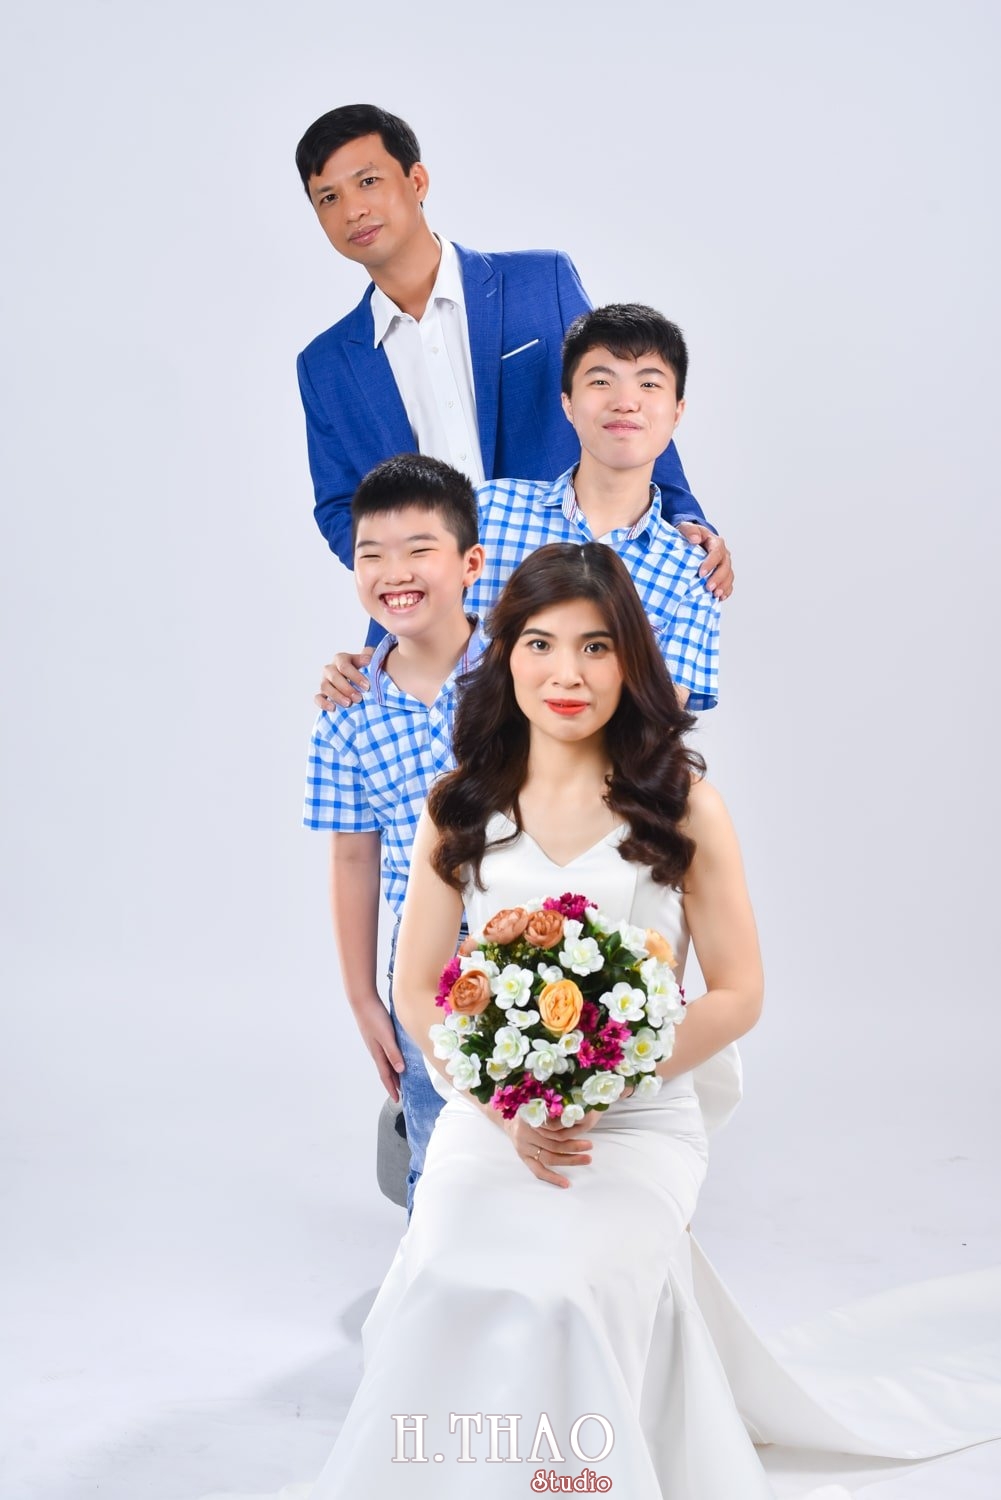 Anh gia dinh 4 nguoi 4 min - Chụp ảnh kỷ niệm 15 năm ngày cưới gia đình chị Tho- HThao Studio